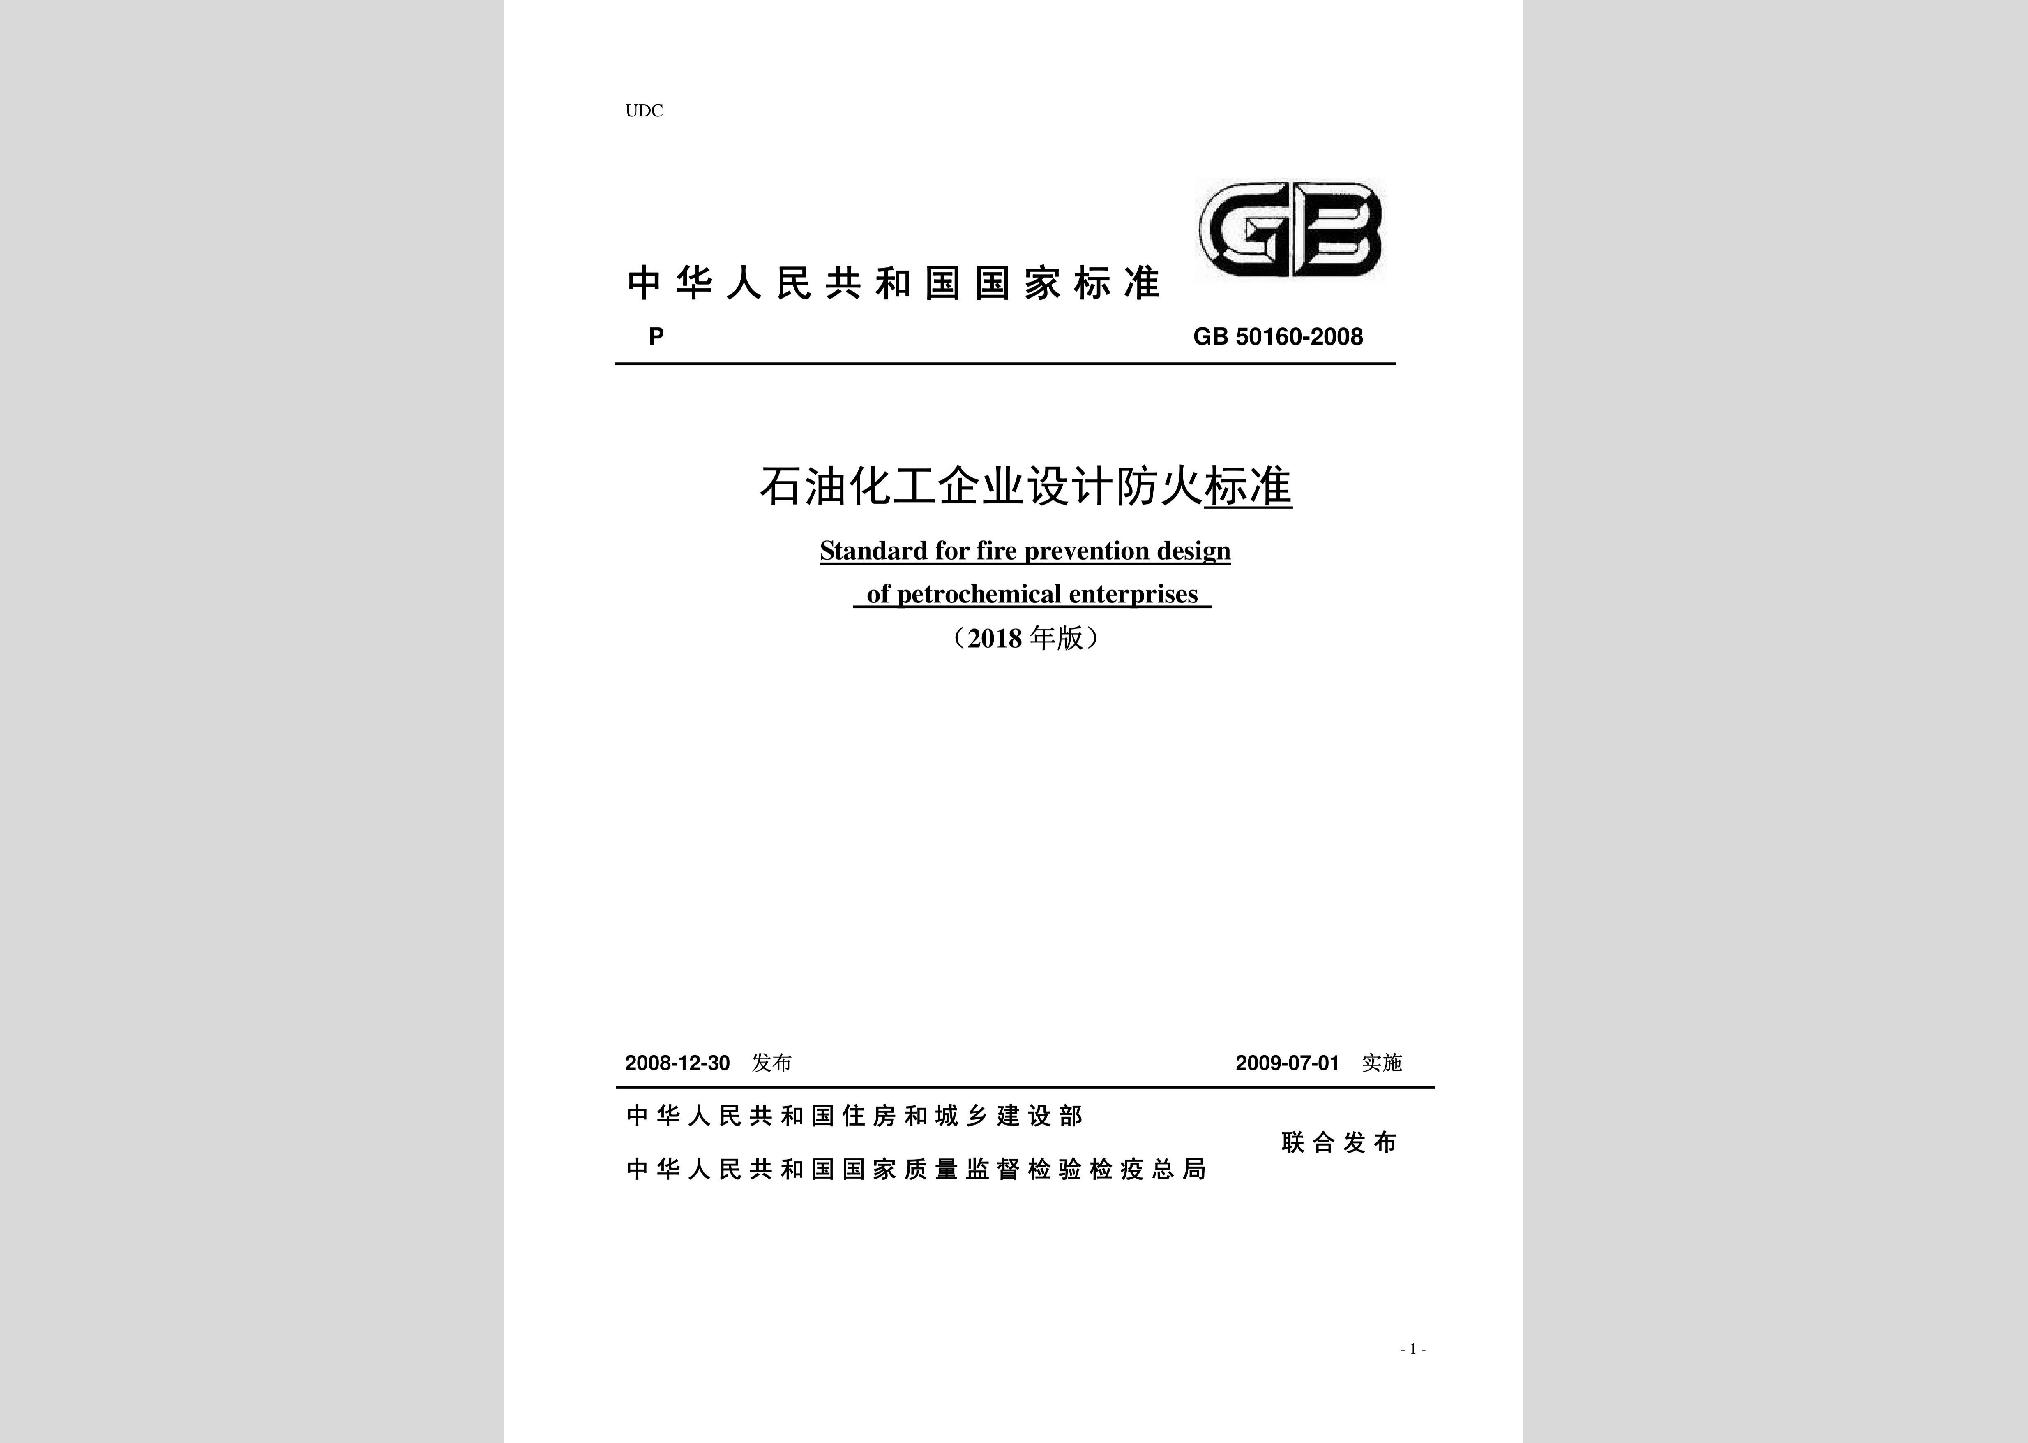 GB50160-2008(2018年局部修订)：石油化工企业设计防火标准(2018年局部修订)